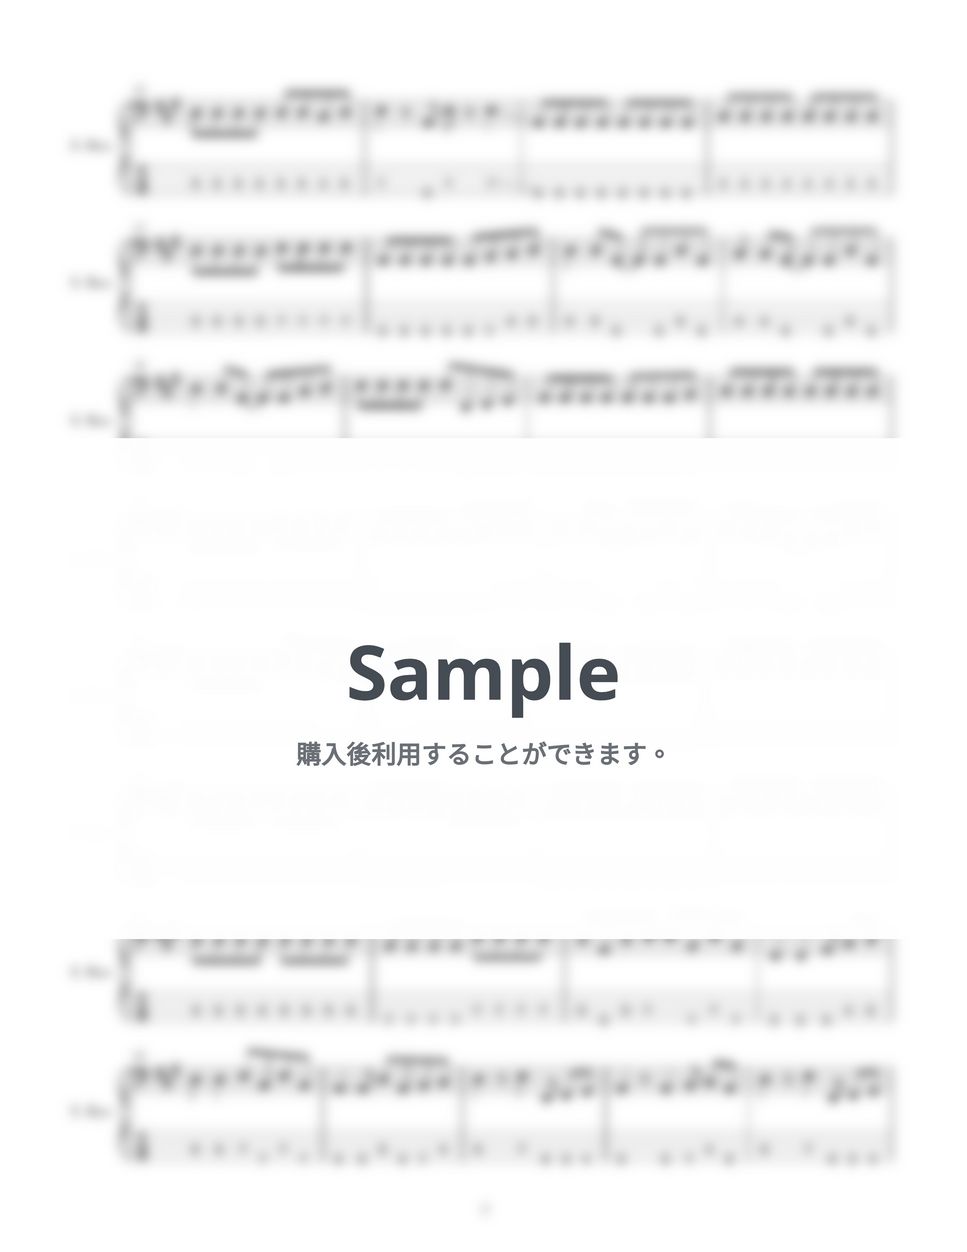 あいみょん - ハルノヒ (４弦ベースTAB譜、PDF4枚) by G's score